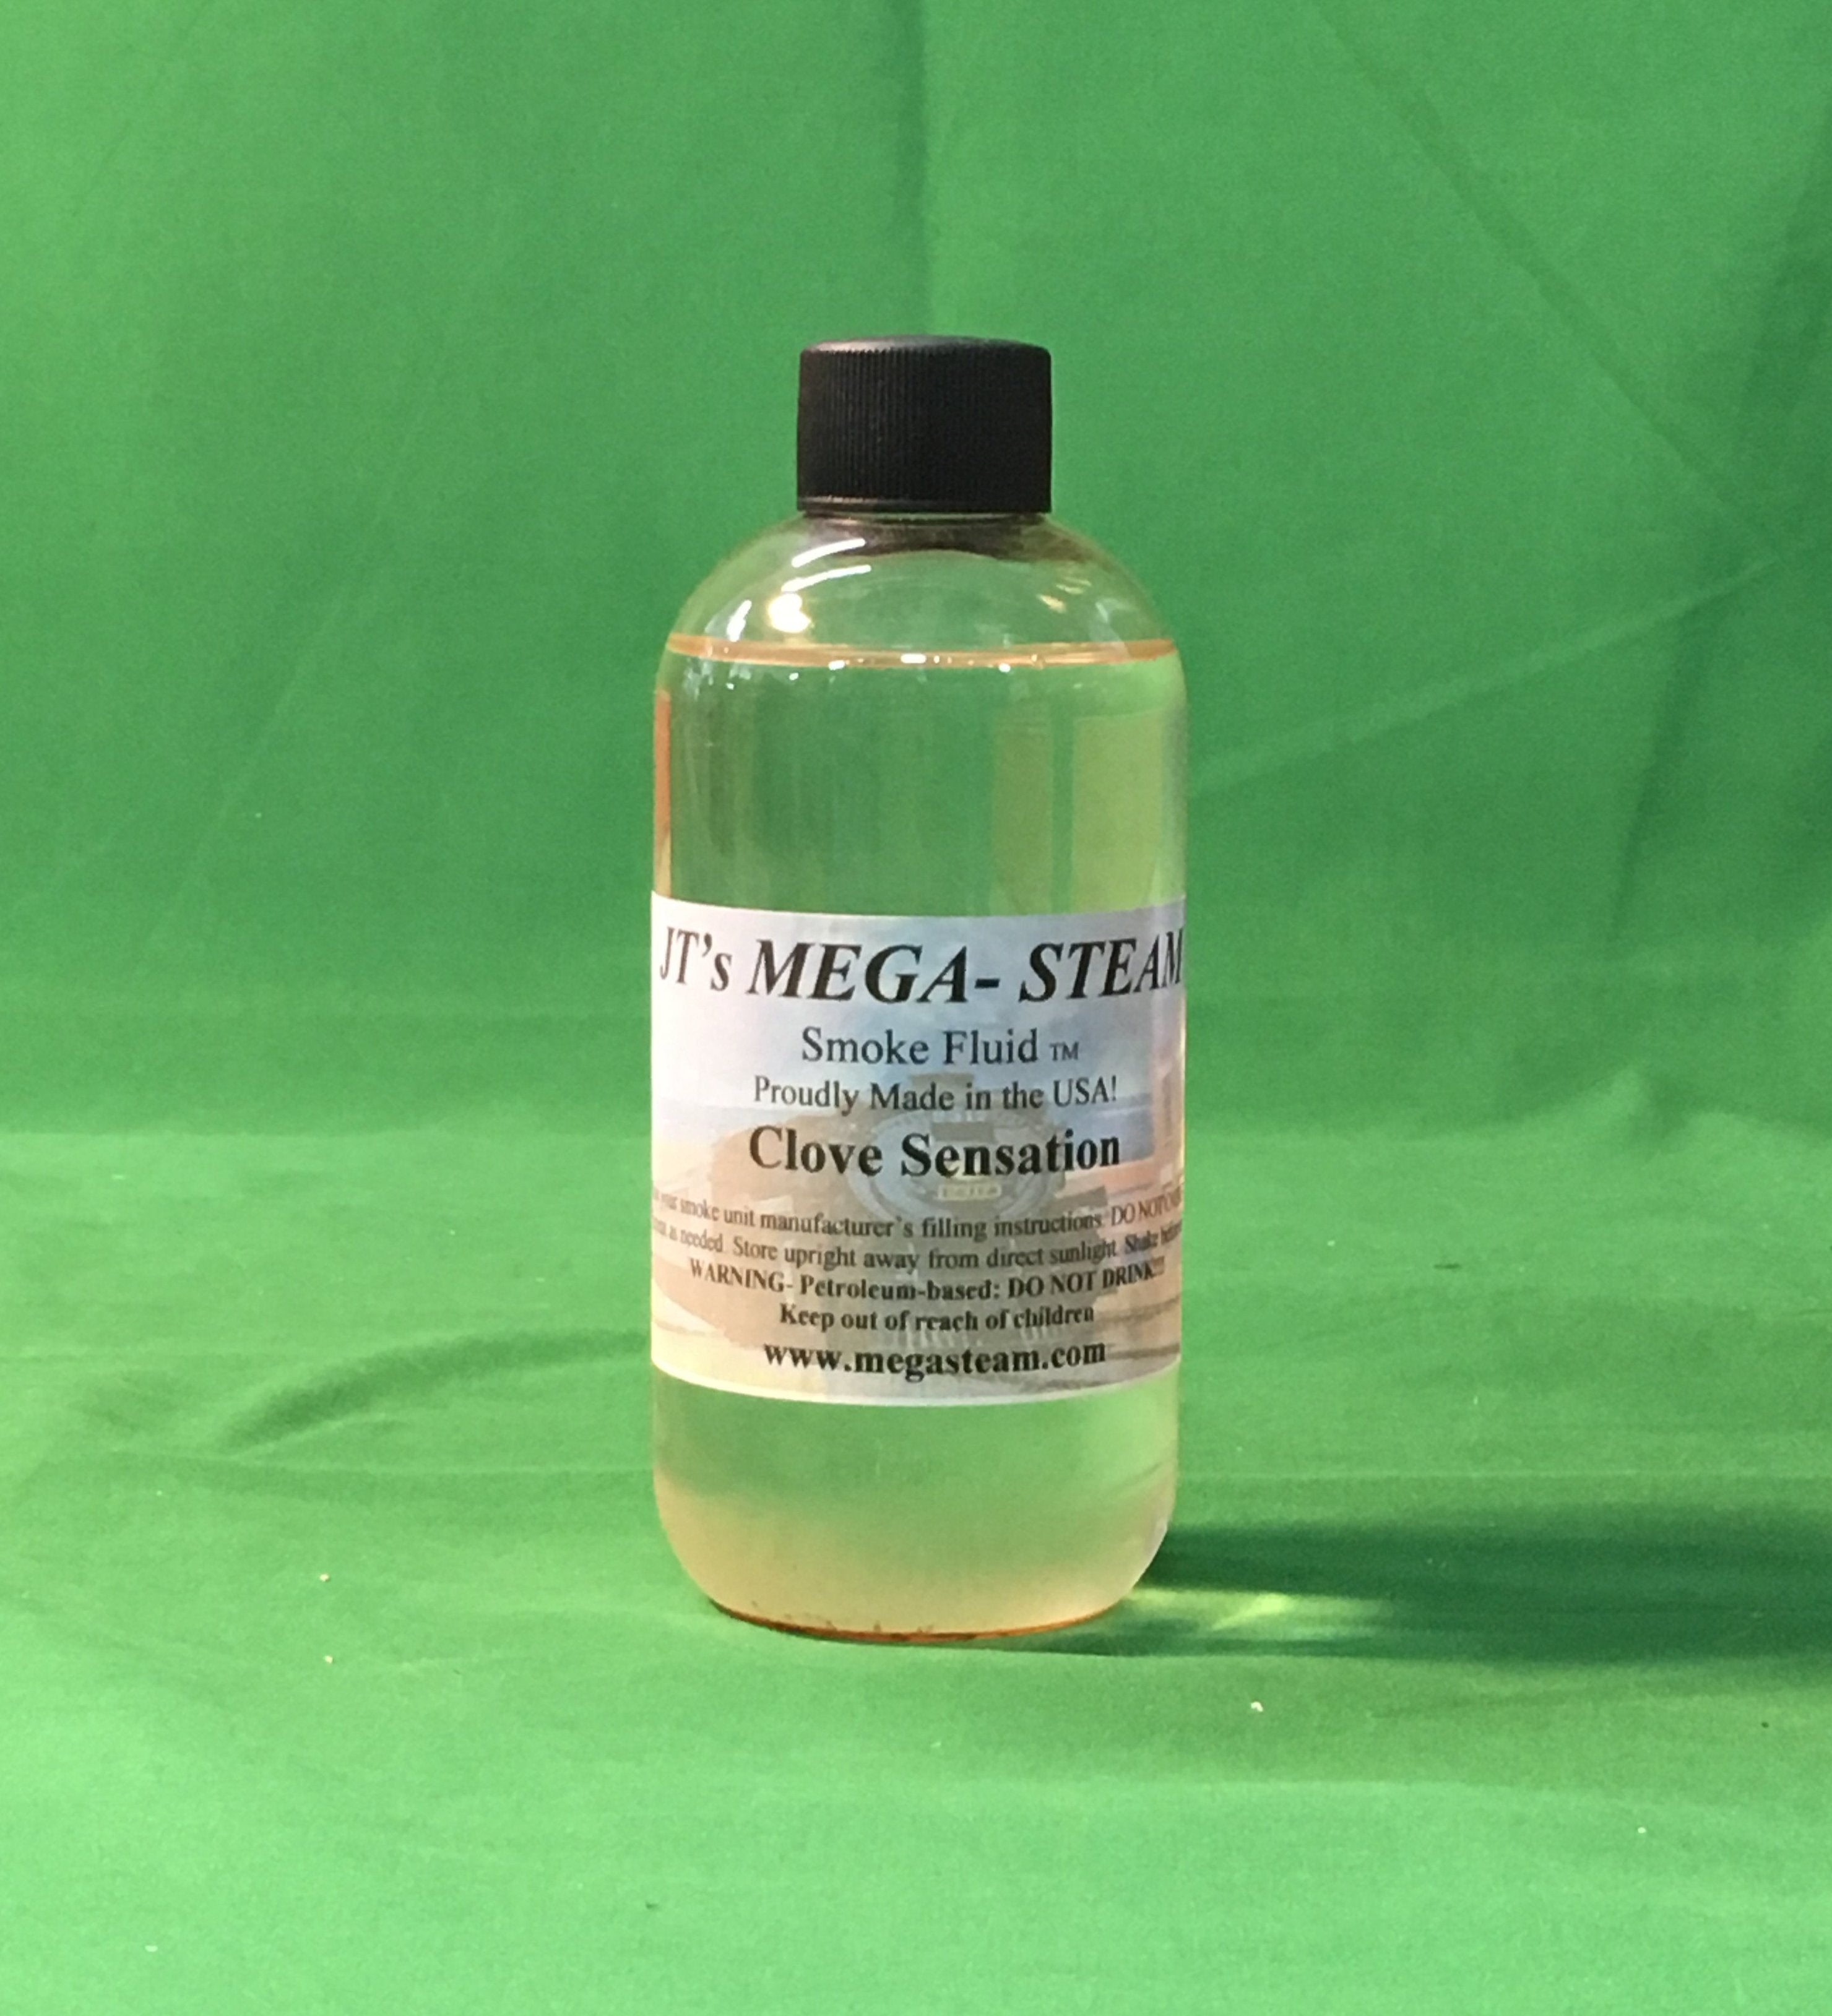 JT's Mega-Steam Smoke Fluid - Diner & Food Scents - 8 Oz Refill Bottle